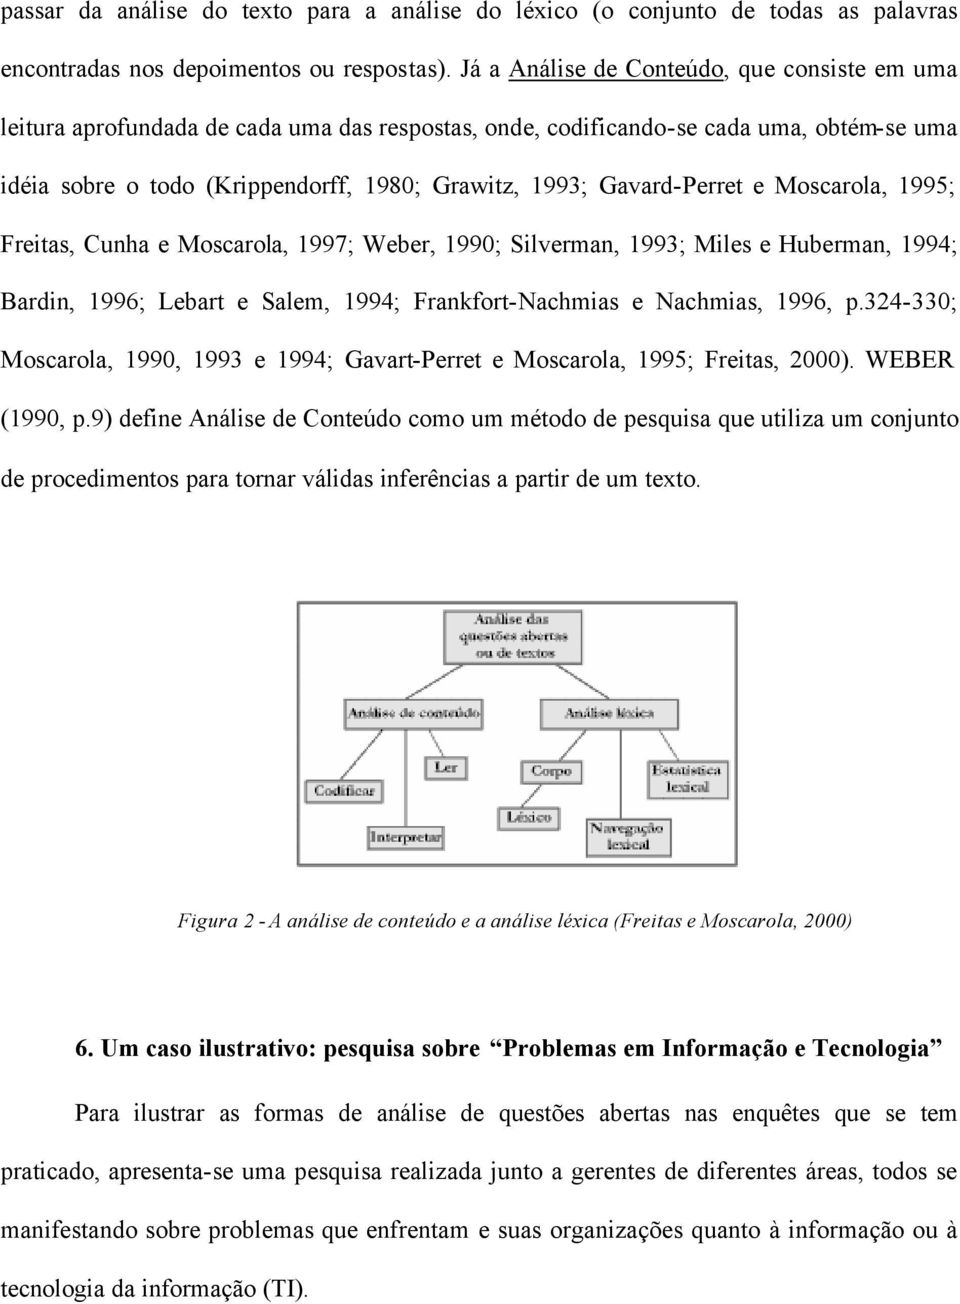 Gavard-Perret e Moscarola, 1995; Freitas, Cunha e Moscarola, 1997; Weber, 1990; Silverman, 1993; Miles e Huberman, 1994; Bardin, 1996; Lebart e Salem, 1994; Frankfort-Nachmias e Nachmias, 1996, p.